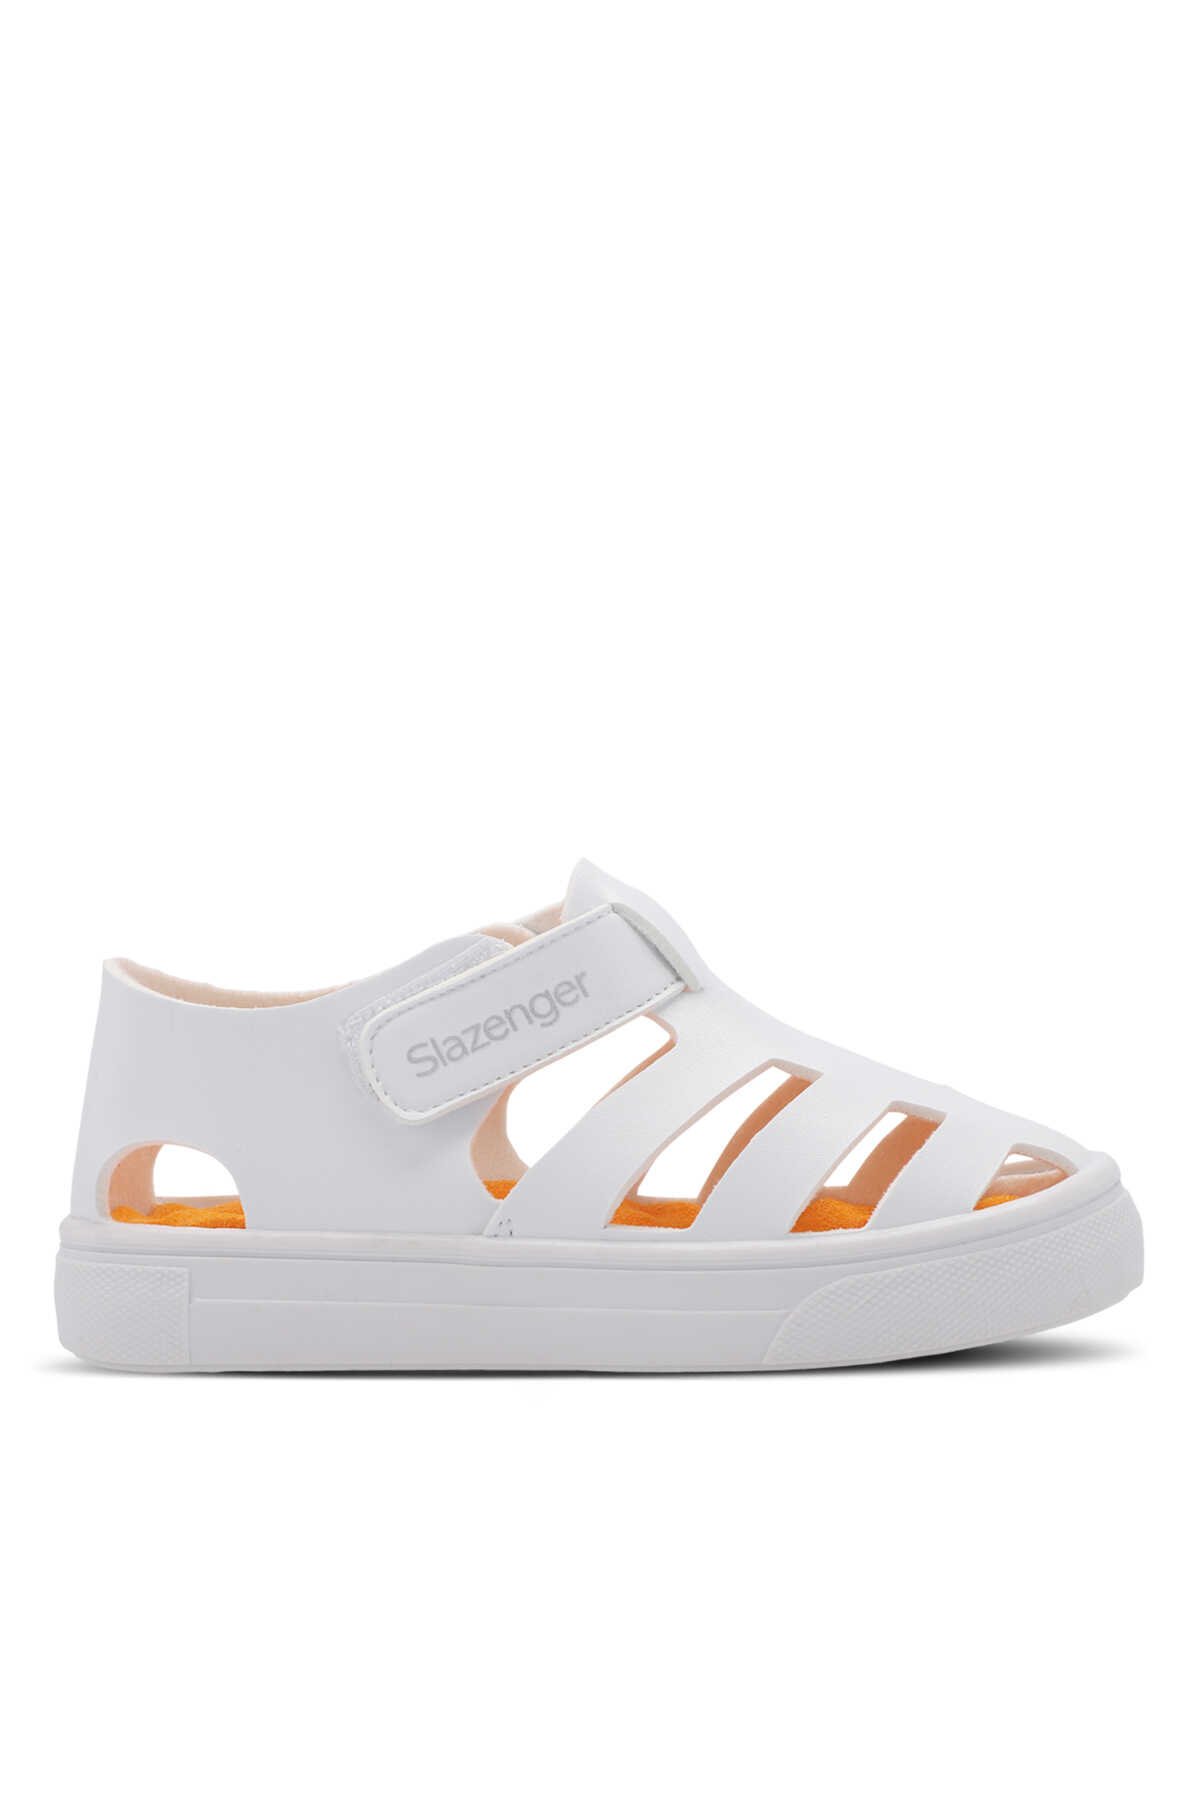 Slazenger - Slazenger KRYSTAL Unisex Çocuk Sneaker Ayakkabı Beyaz